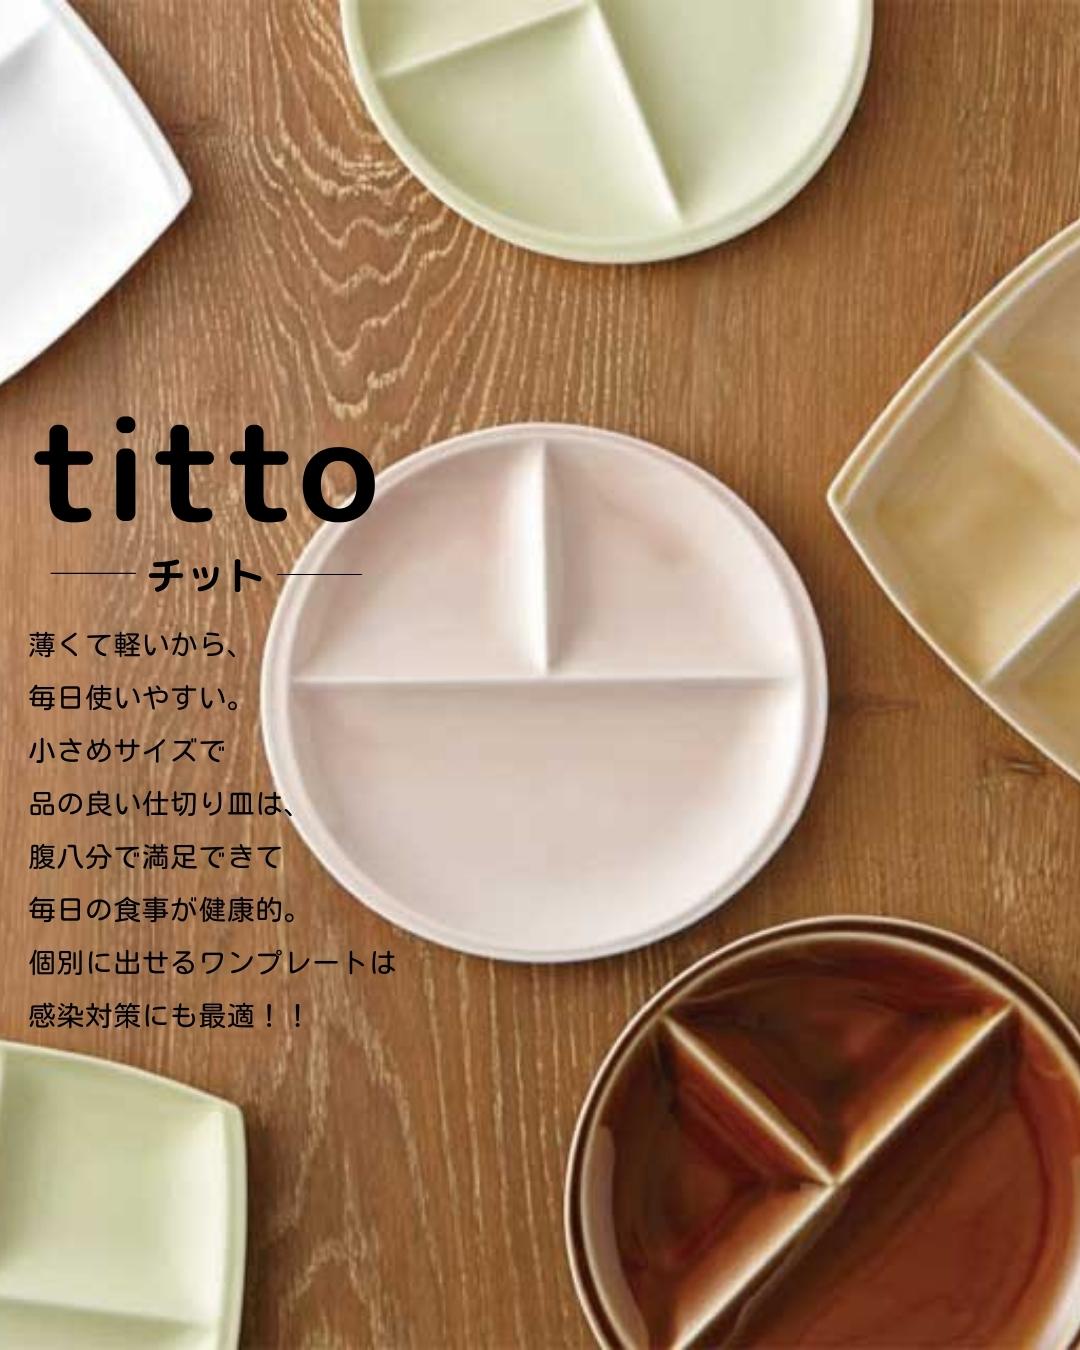 titto 3つ仕切皿(角) ﾋﾟﾝｸ | すべての商品 | うつわのお店たたら